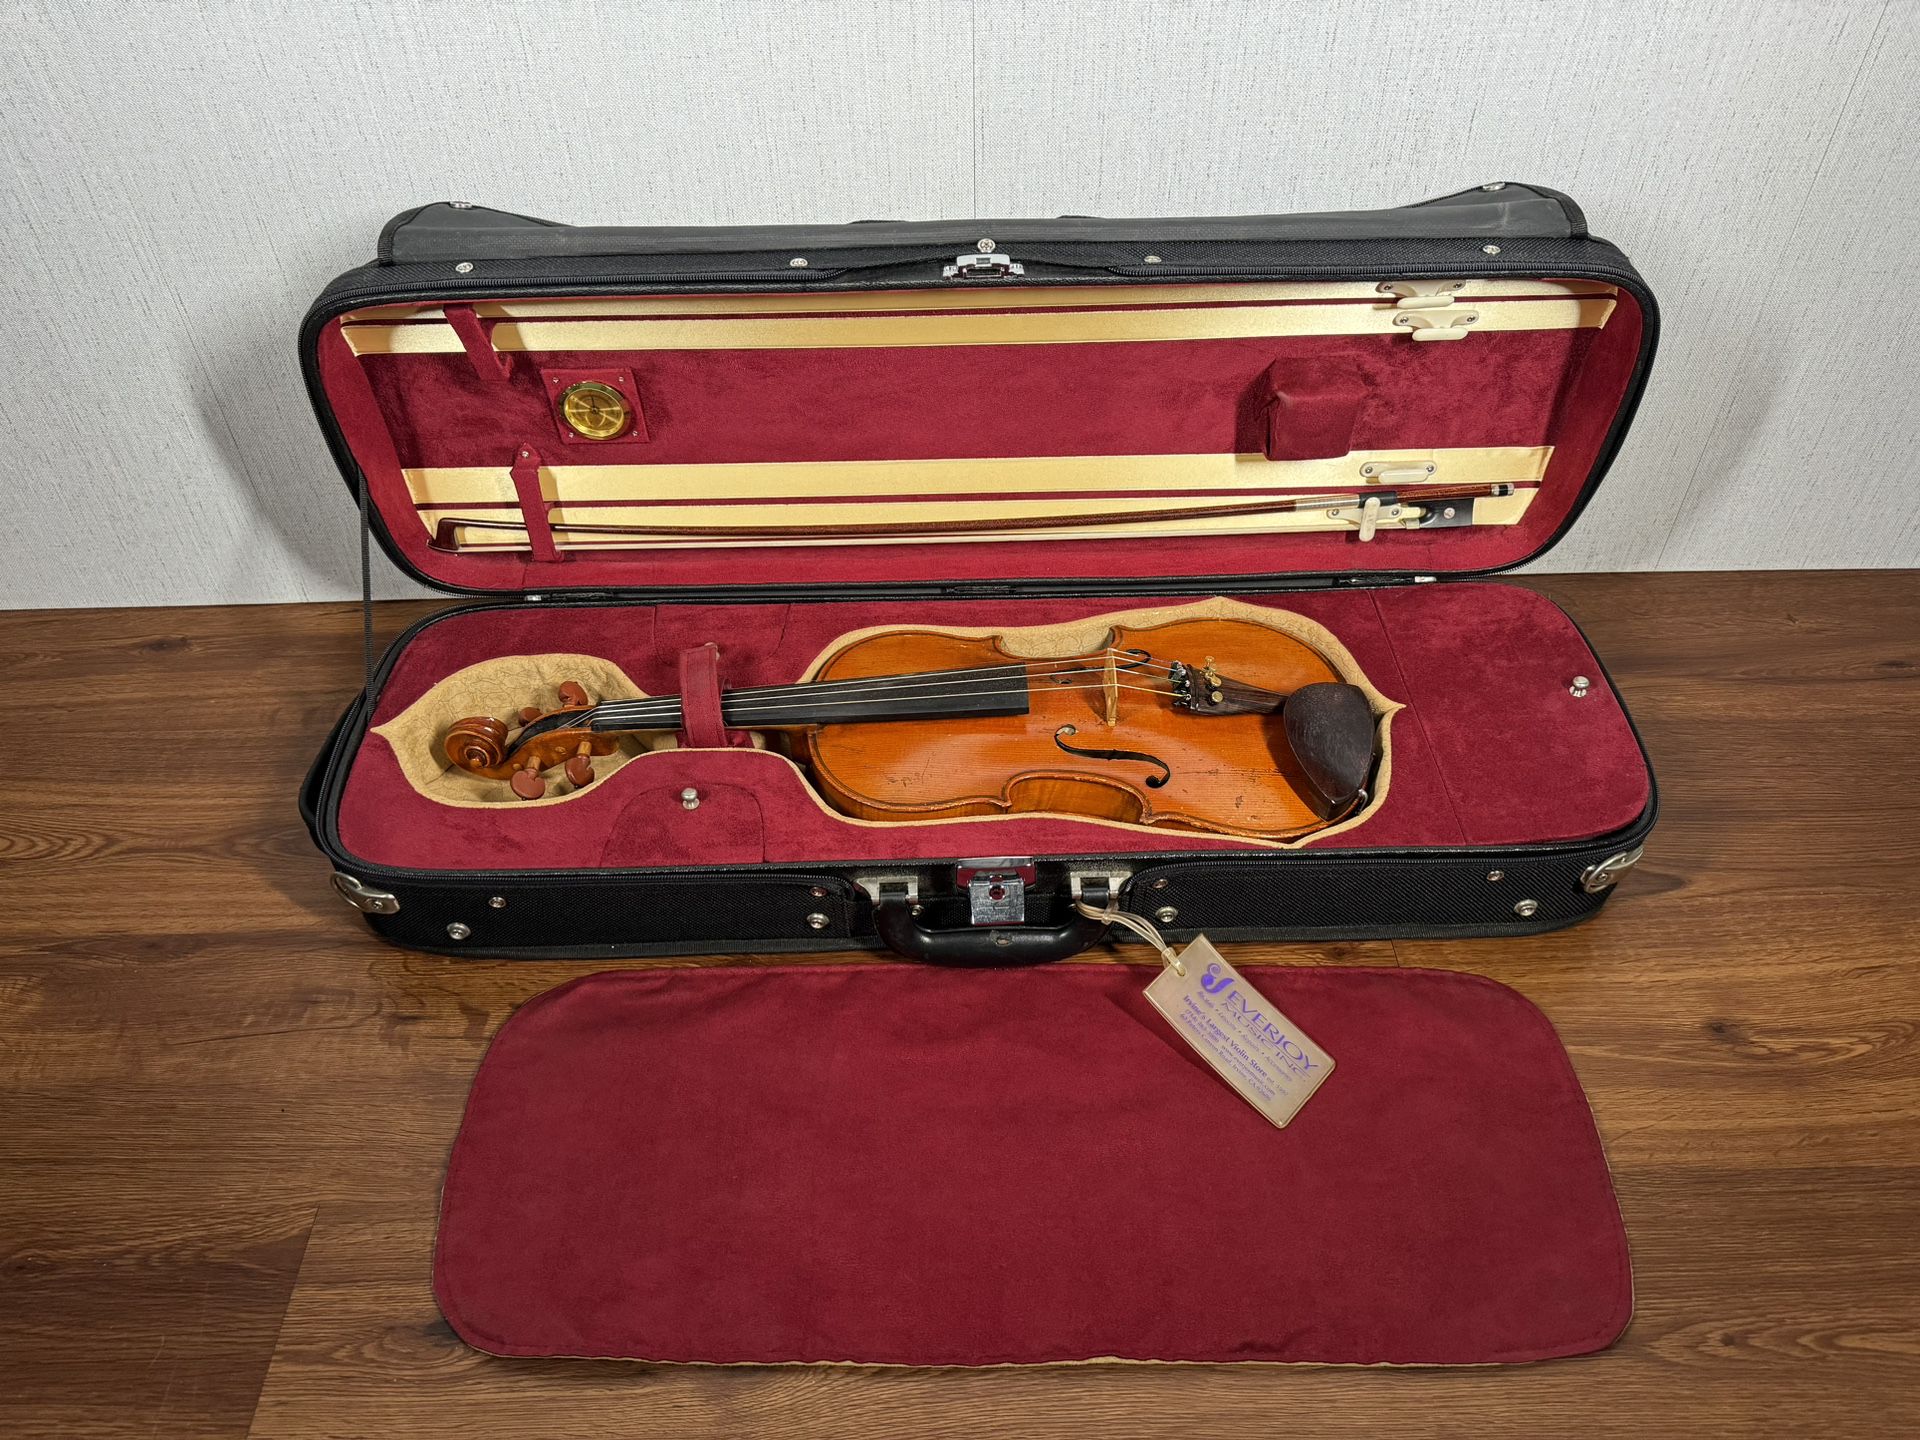 Violin Antonius Stradivarius